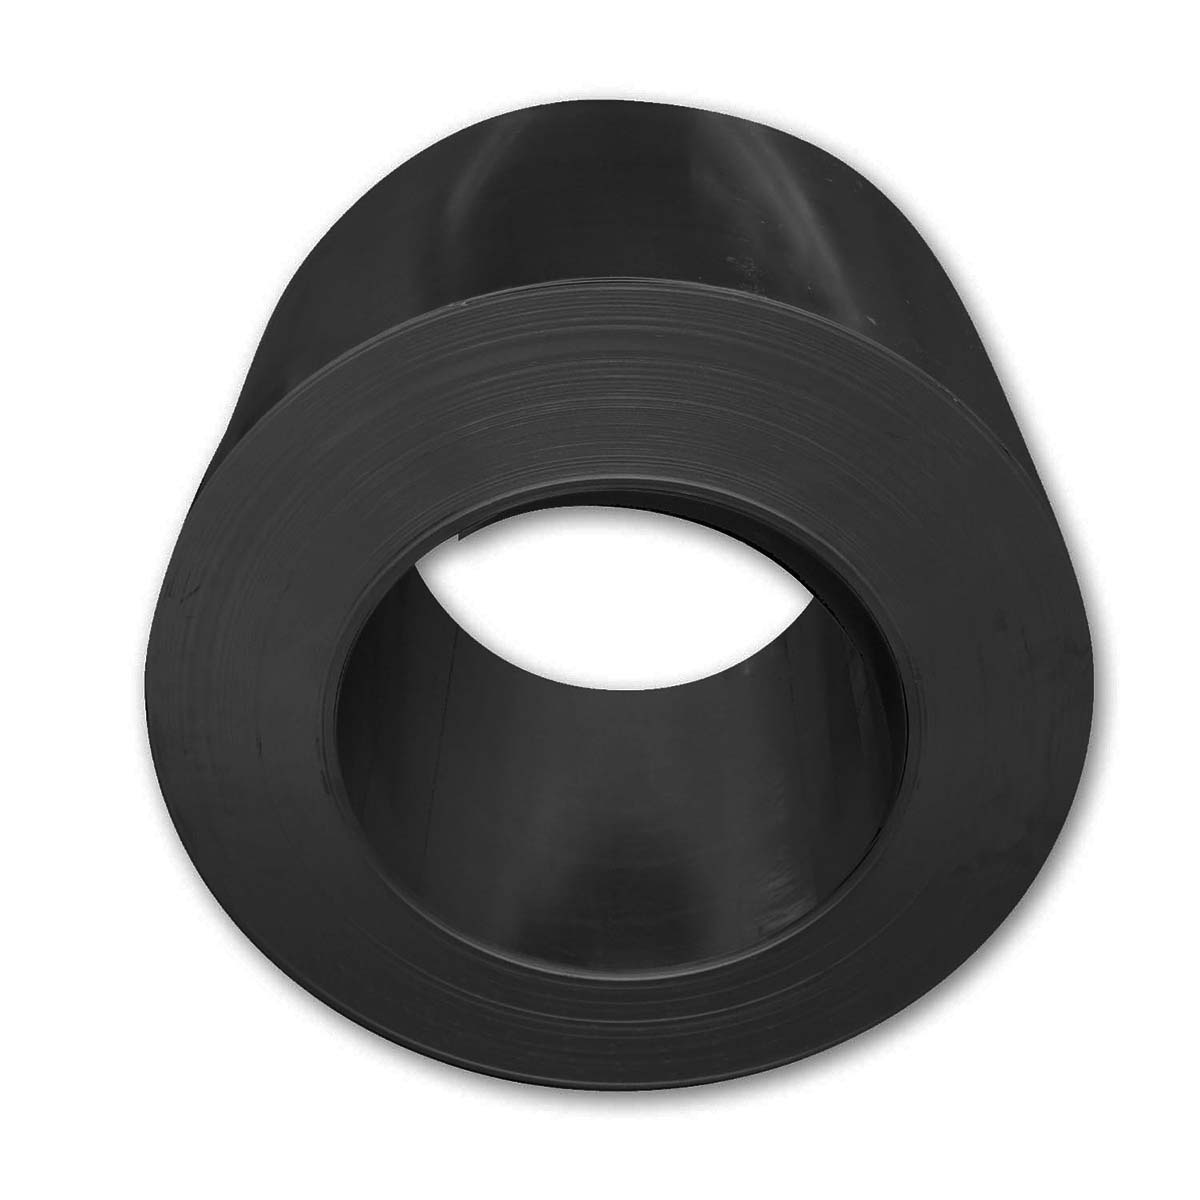 Zambelli Coil-verzinkt, Farbe Schwarz 0,6 x 670 mm x 30 lfm, DX 53 mit Folie